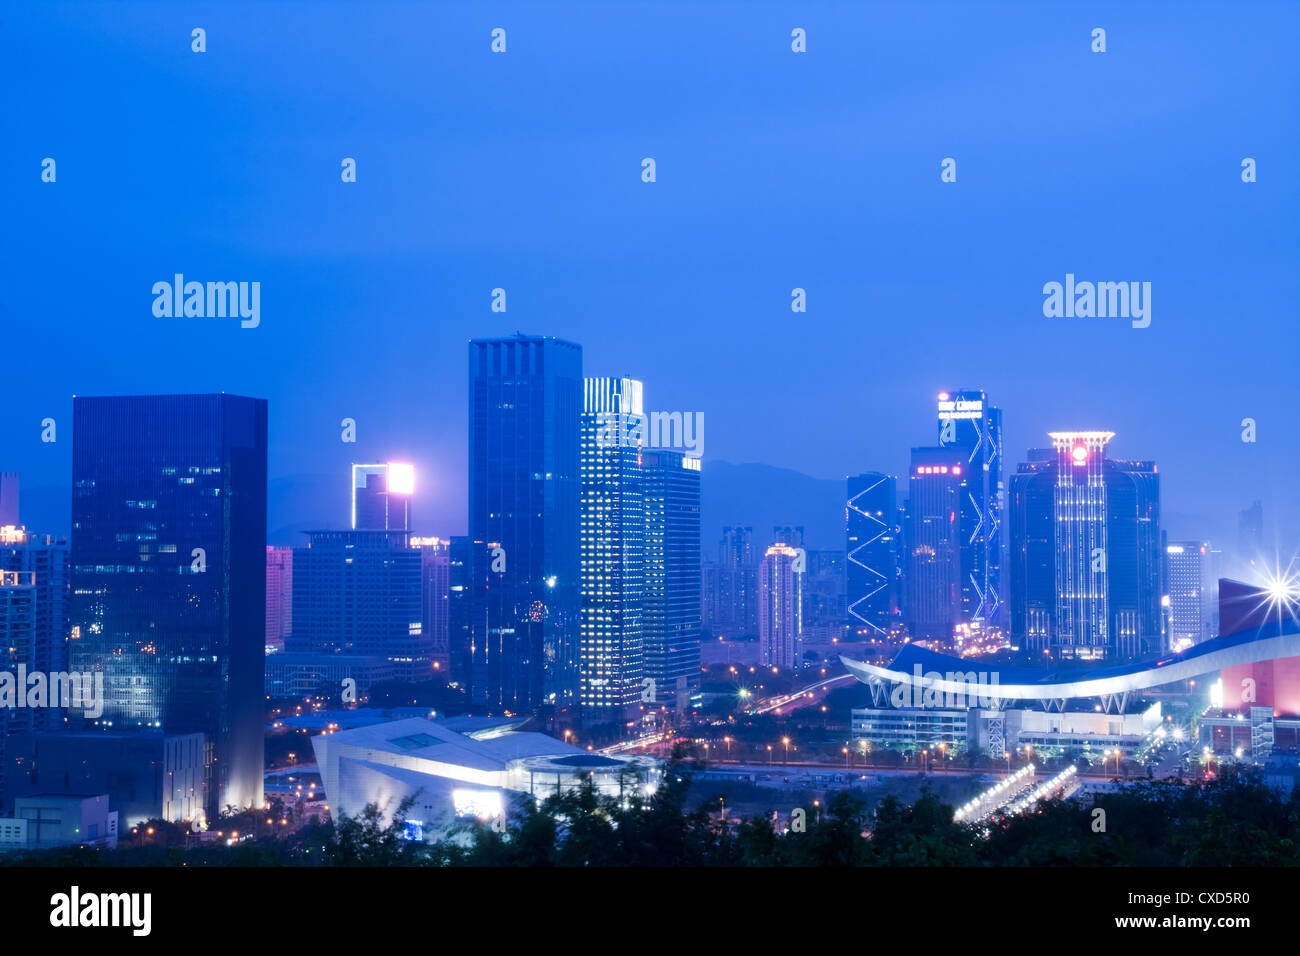 night scene of shenzhen city Stock Photo